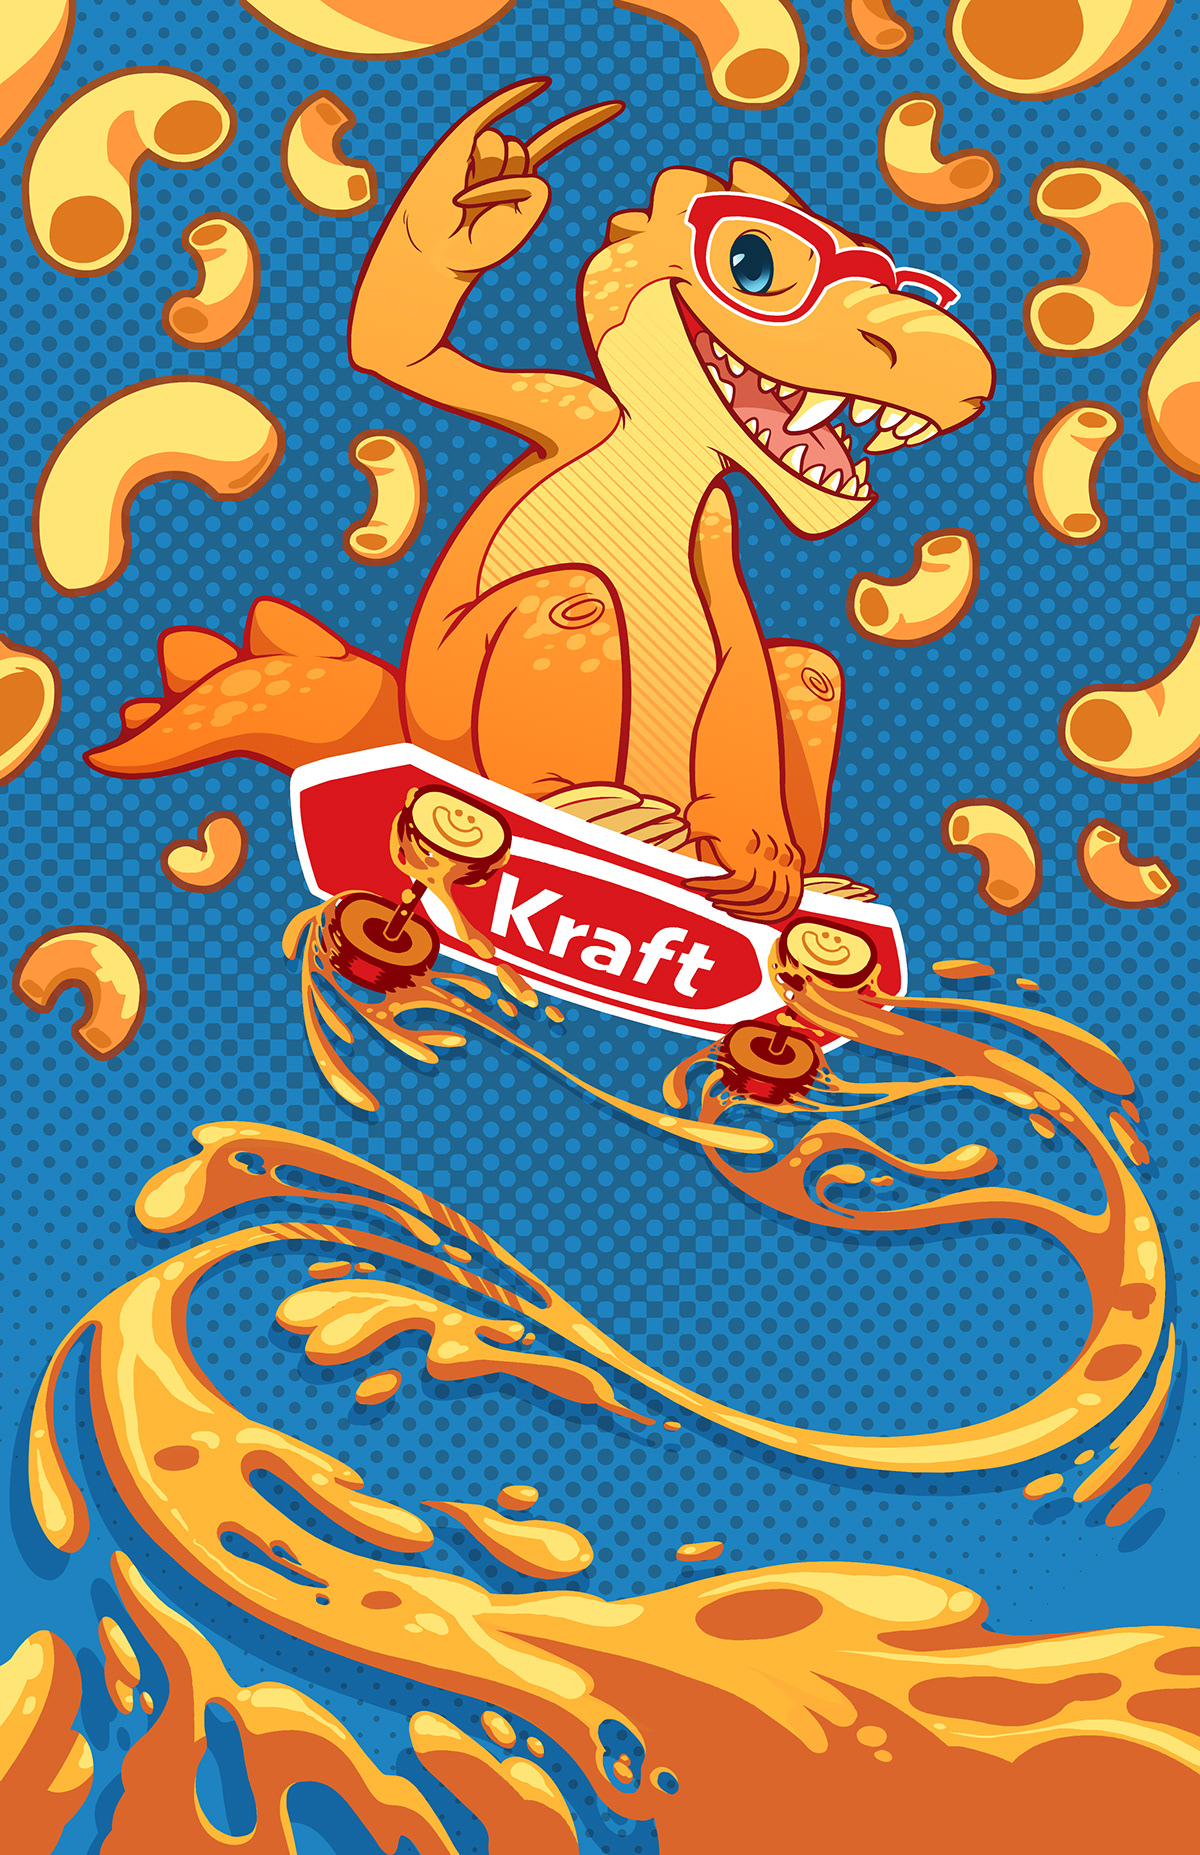 Kraft macaroni and cheese Dinosaur Mascot Cheese